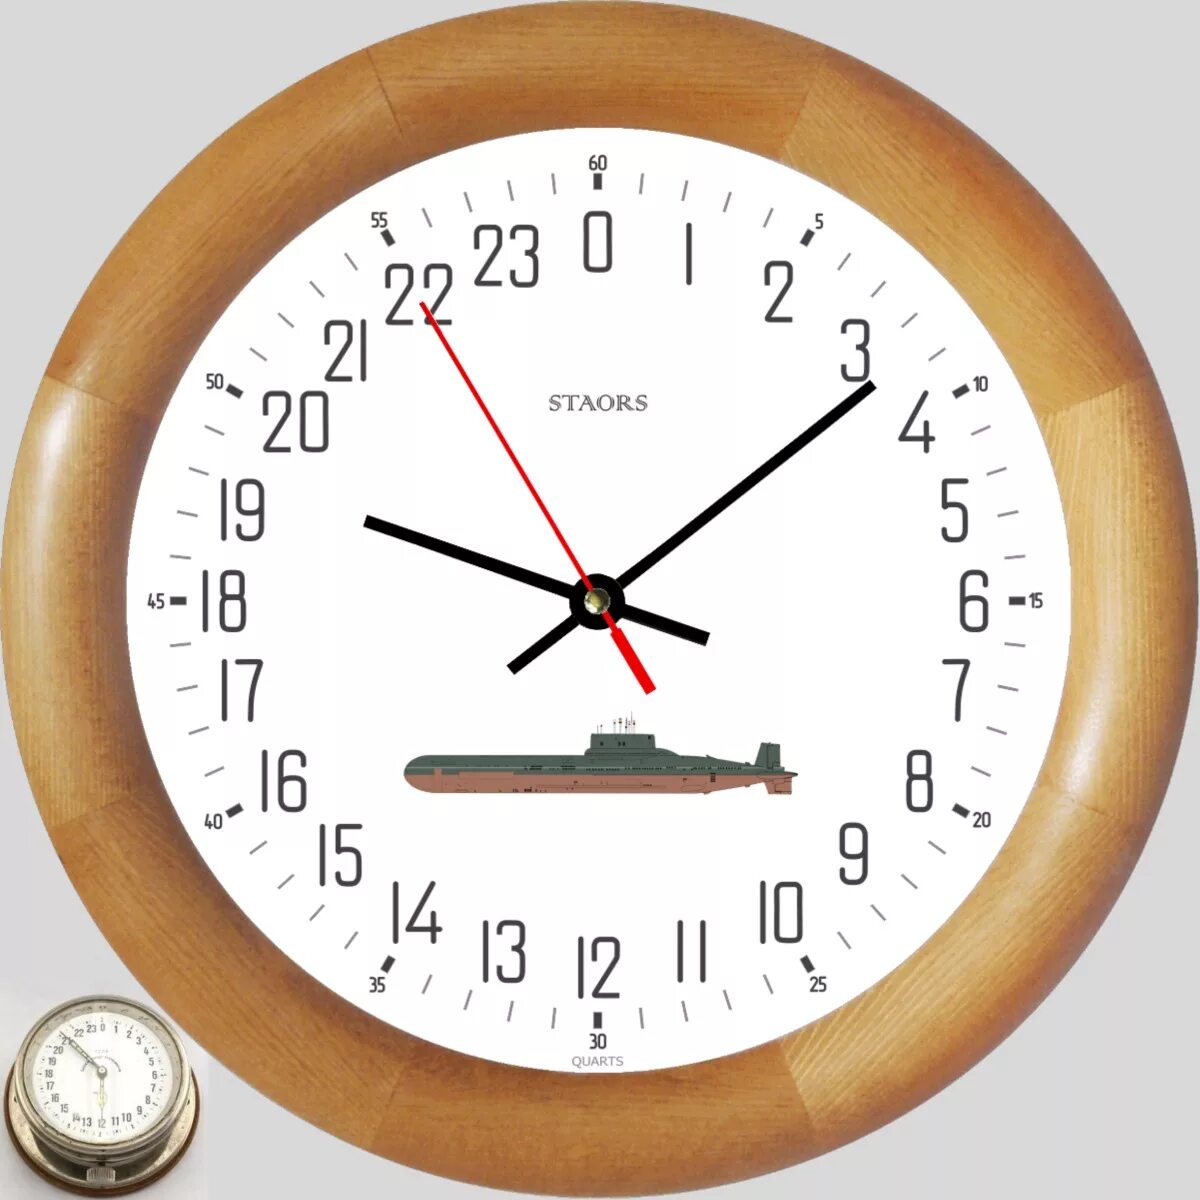 Часы корабельные, судовые с 24-х часовым циферблатом. Судовые часы с циферблатом на 24 часа. 24 Циферблатные часы. Корабельные часы 24 часа. 24 коротких часа